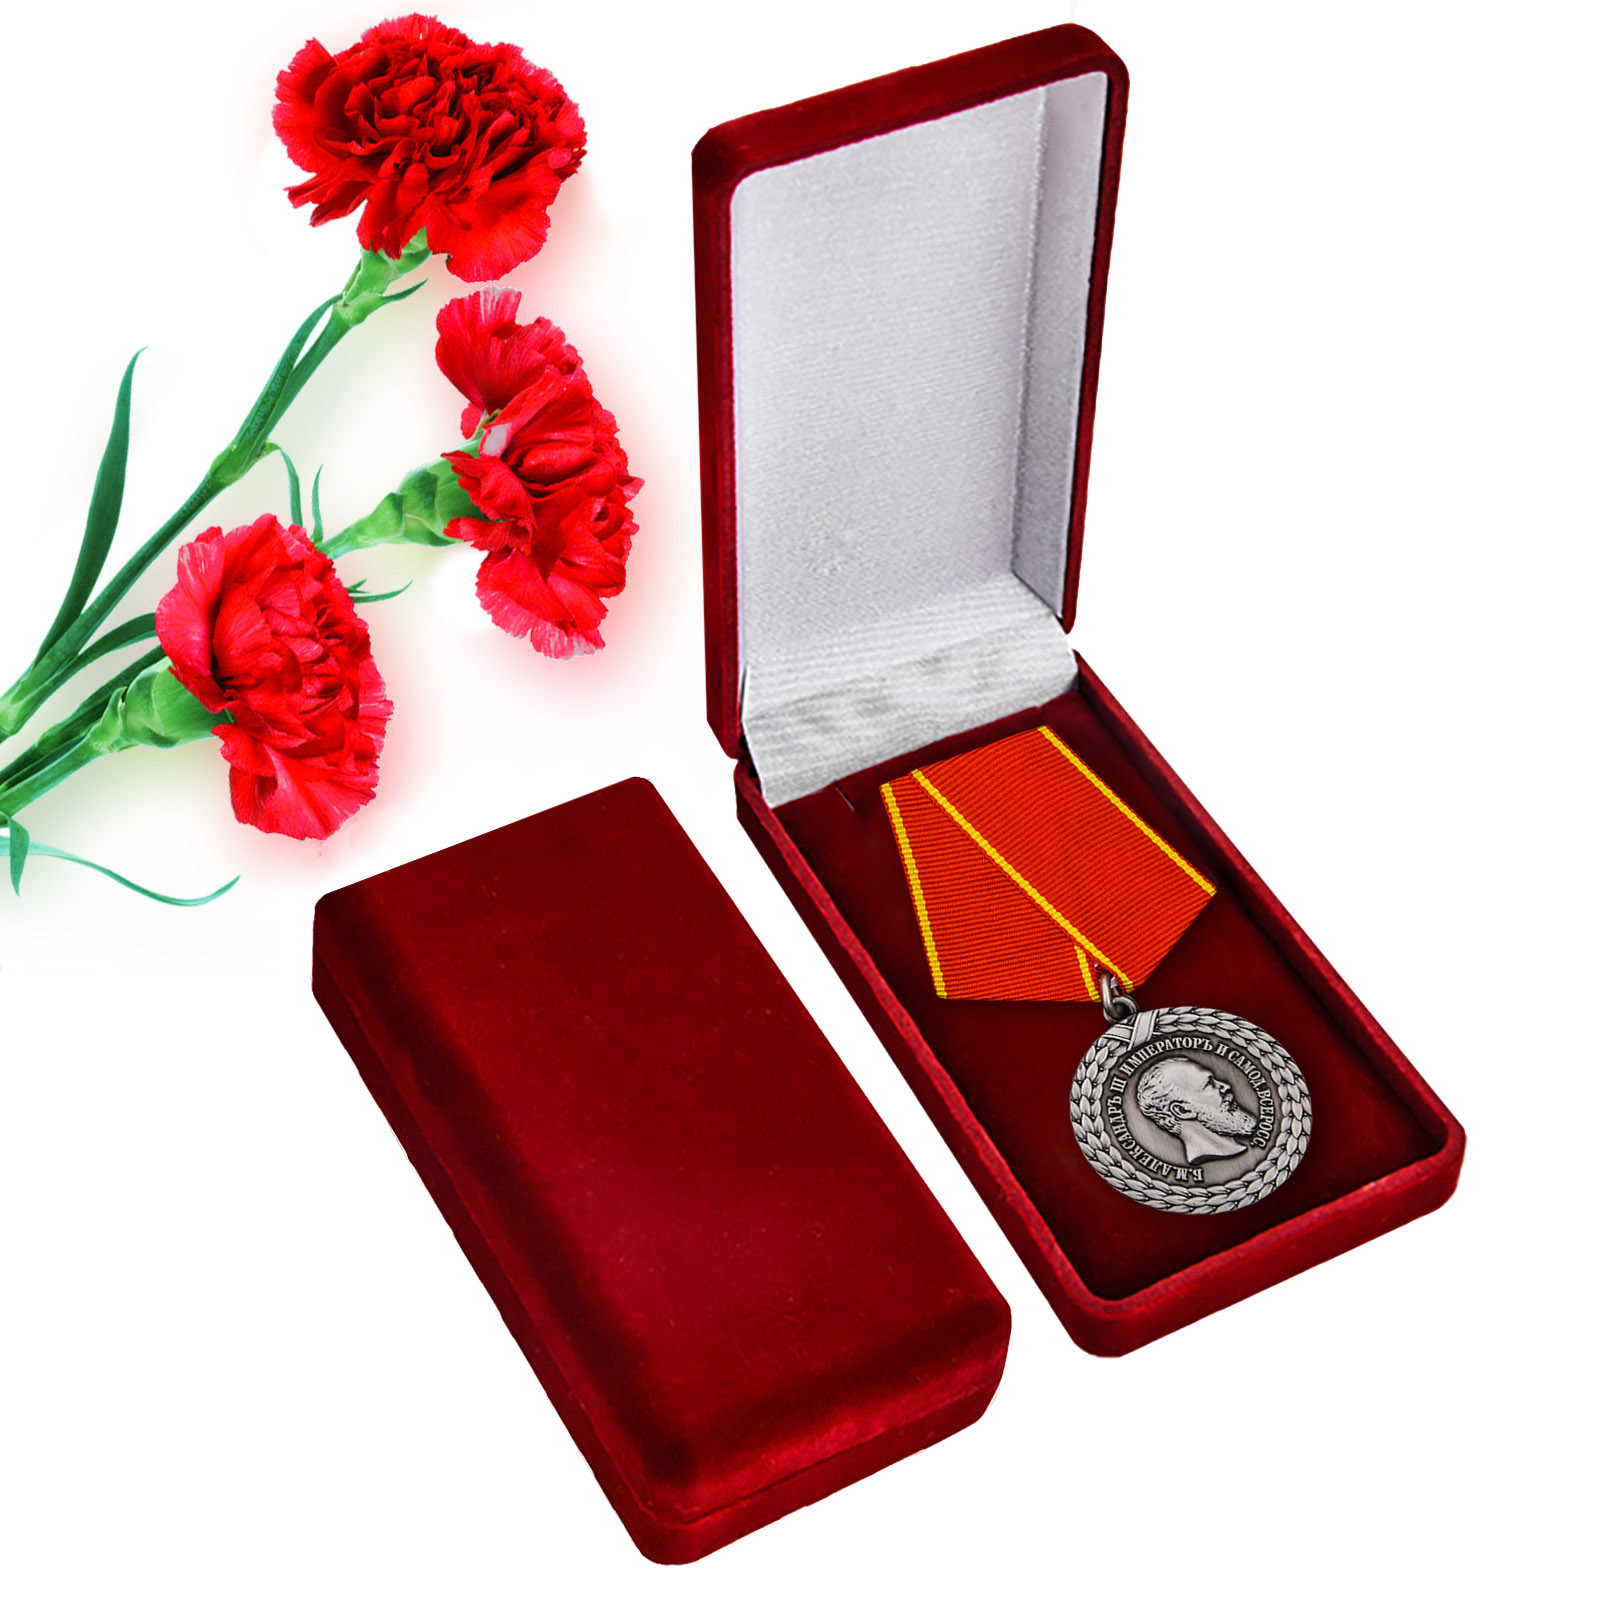 Купить медаль Александра III За беспорочную службу в тюремной страже  оптом ил в розницу